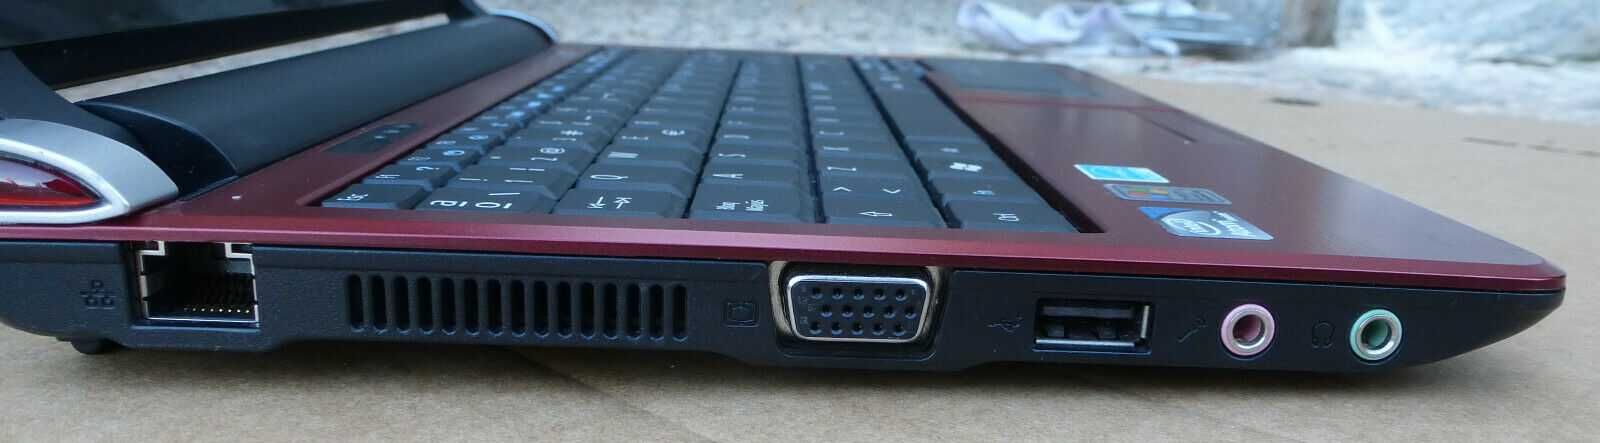 Лаптоп - Acer Aspire one D250 KAV60